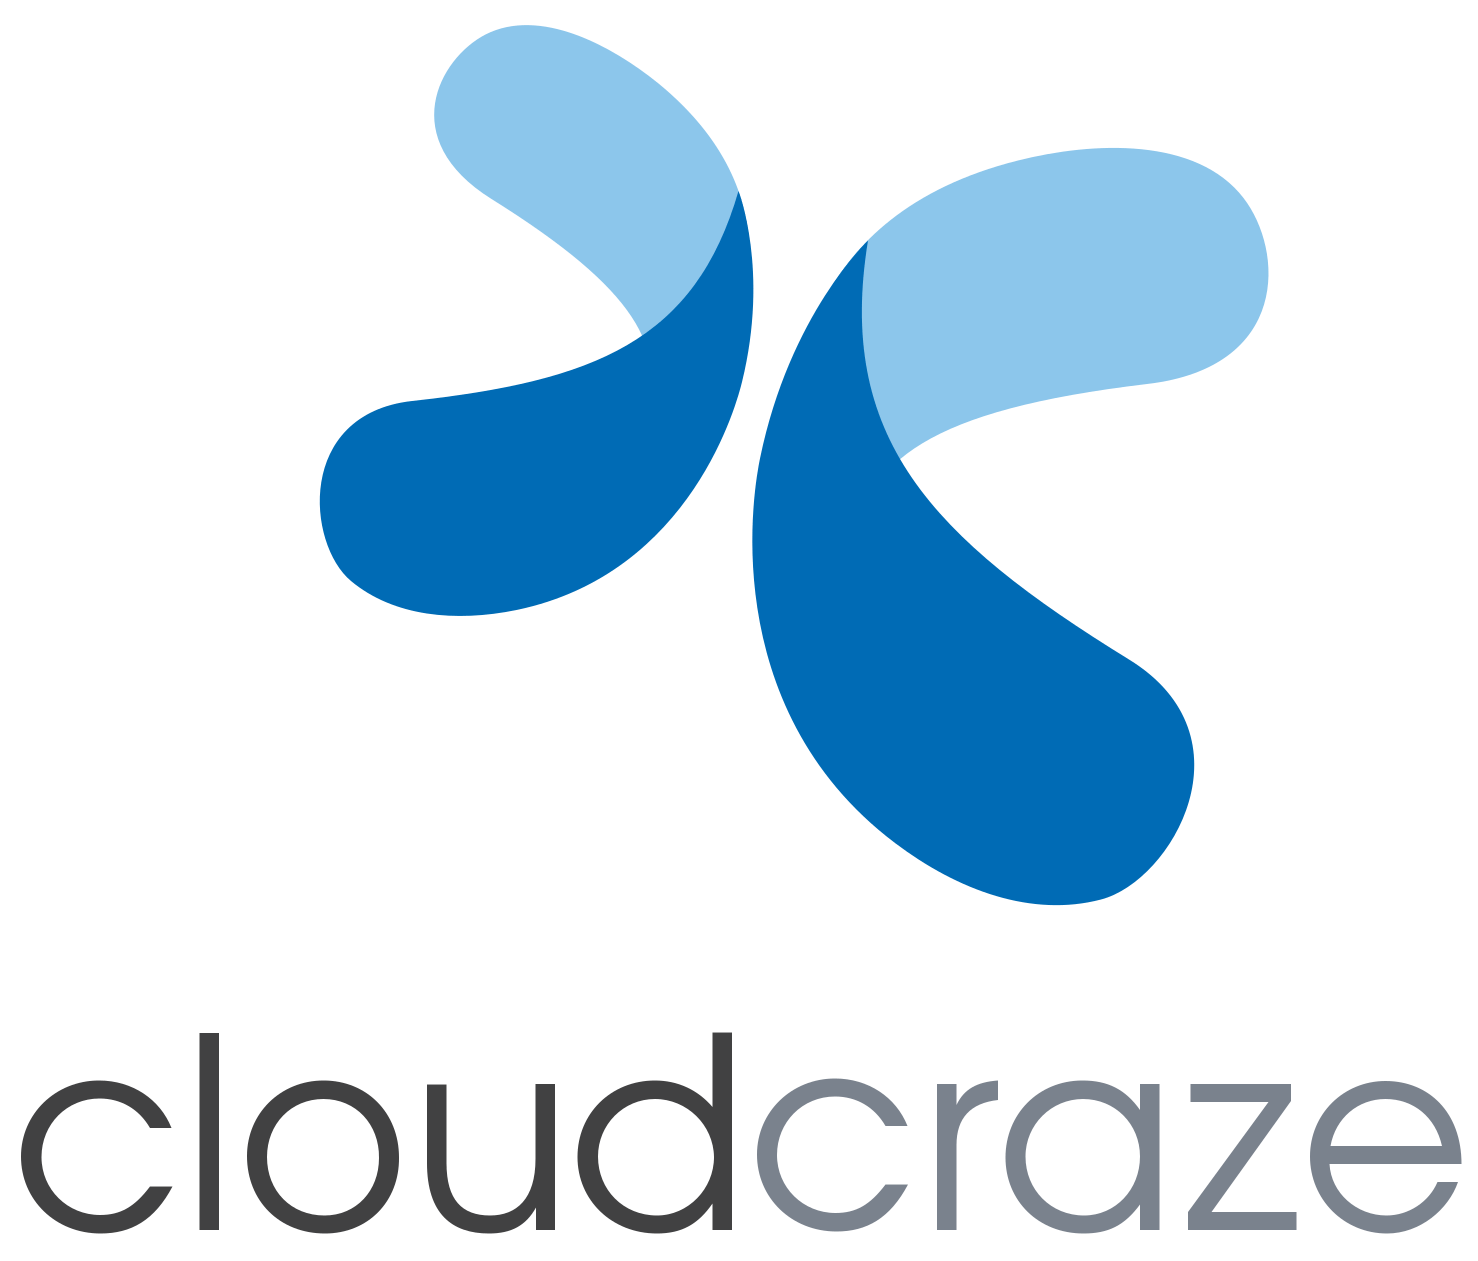 cloudcraze logo